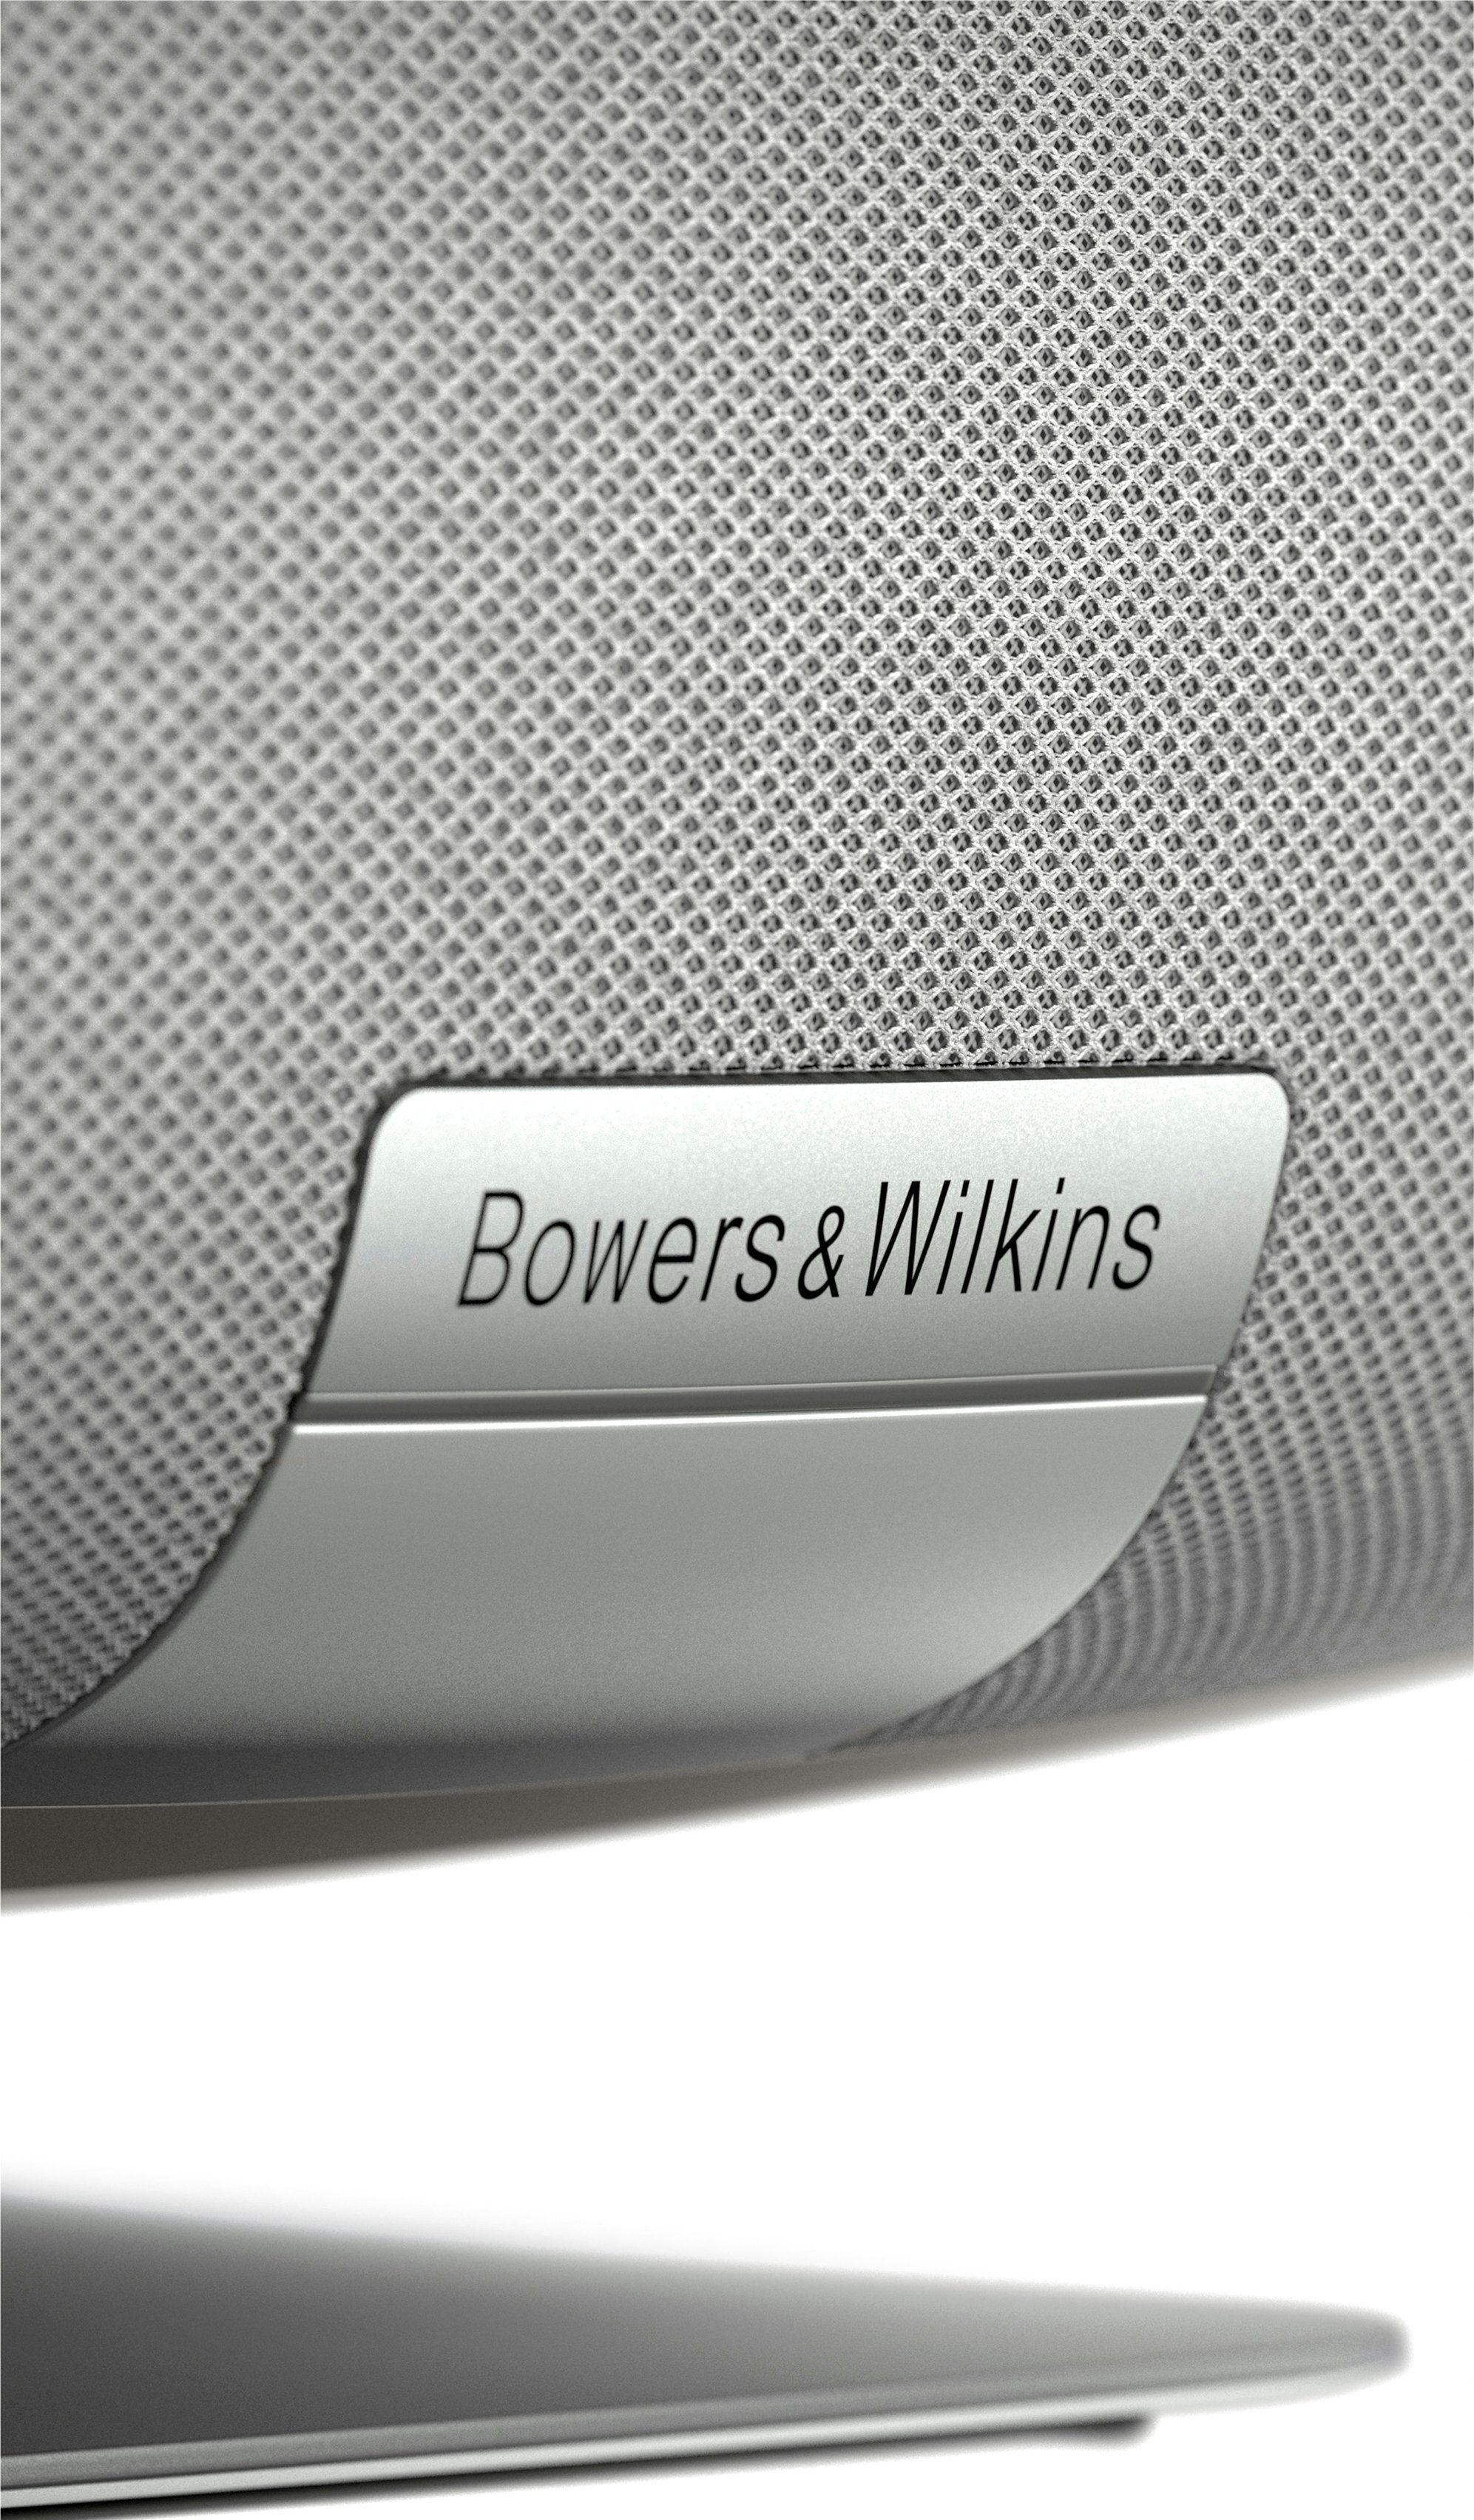 2021 ZEPPELIN Wilkins Bowers & grau Lautsprecher